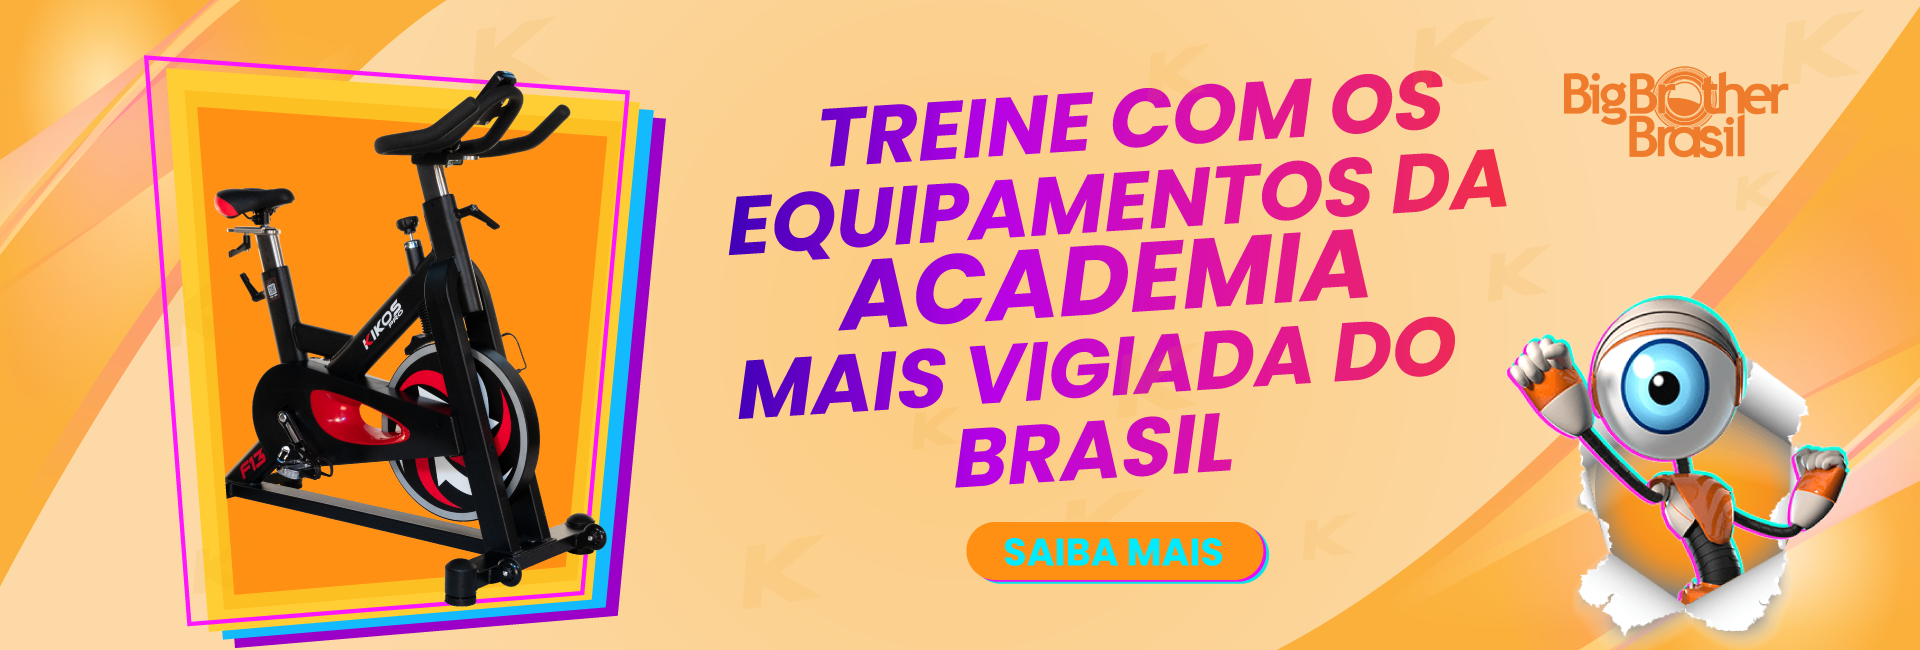 Treine com os equipamentos da academia mais vigiada do Brasil